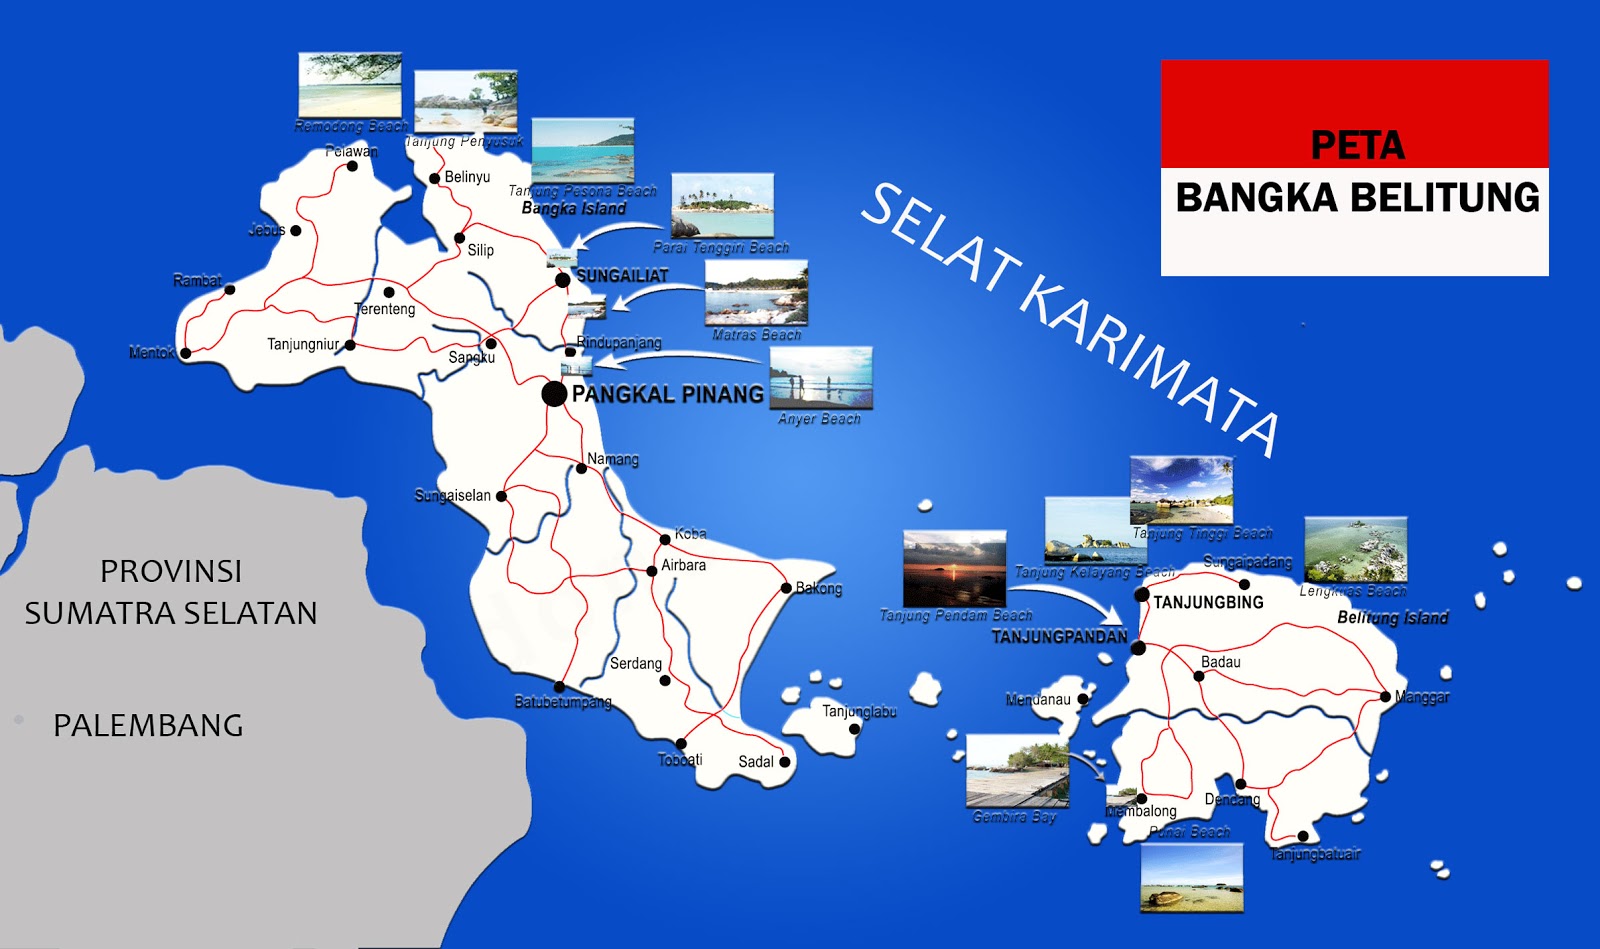  Peta Bangka Belitung Lengkap 6 Kabupaten 1 Kota